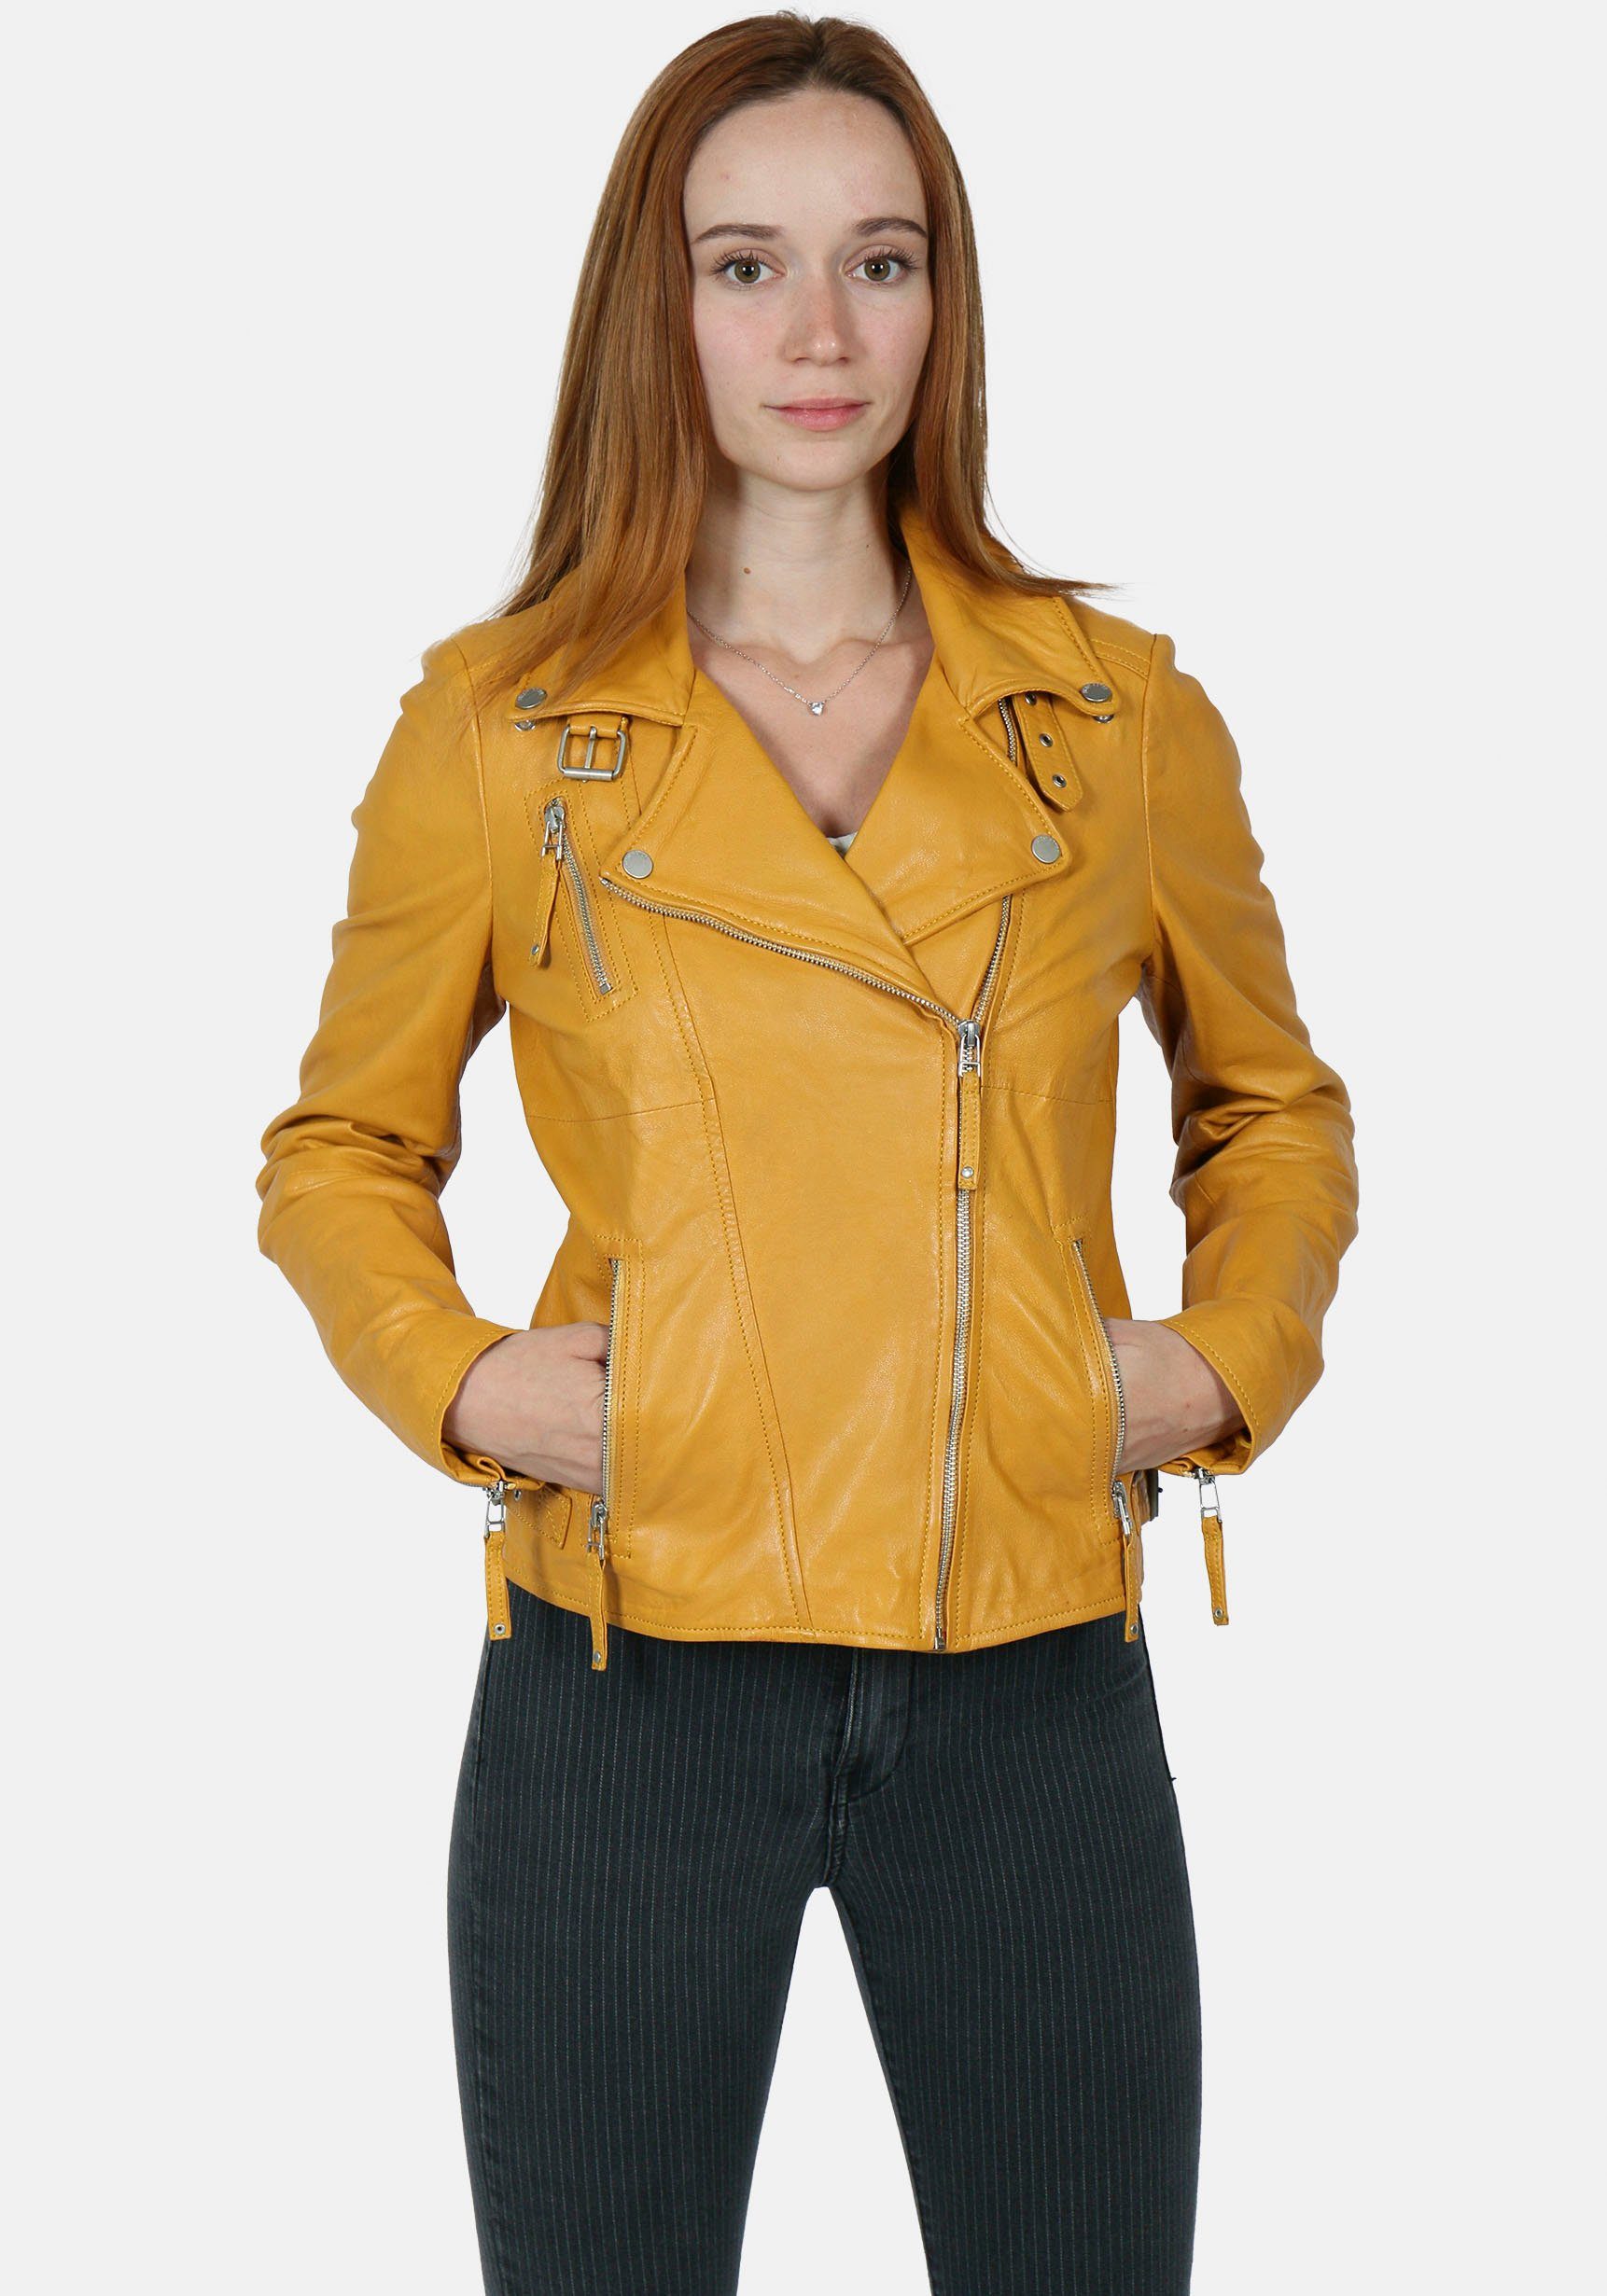 Gelbe Damen-Lederjacke online kaufen | OTTO